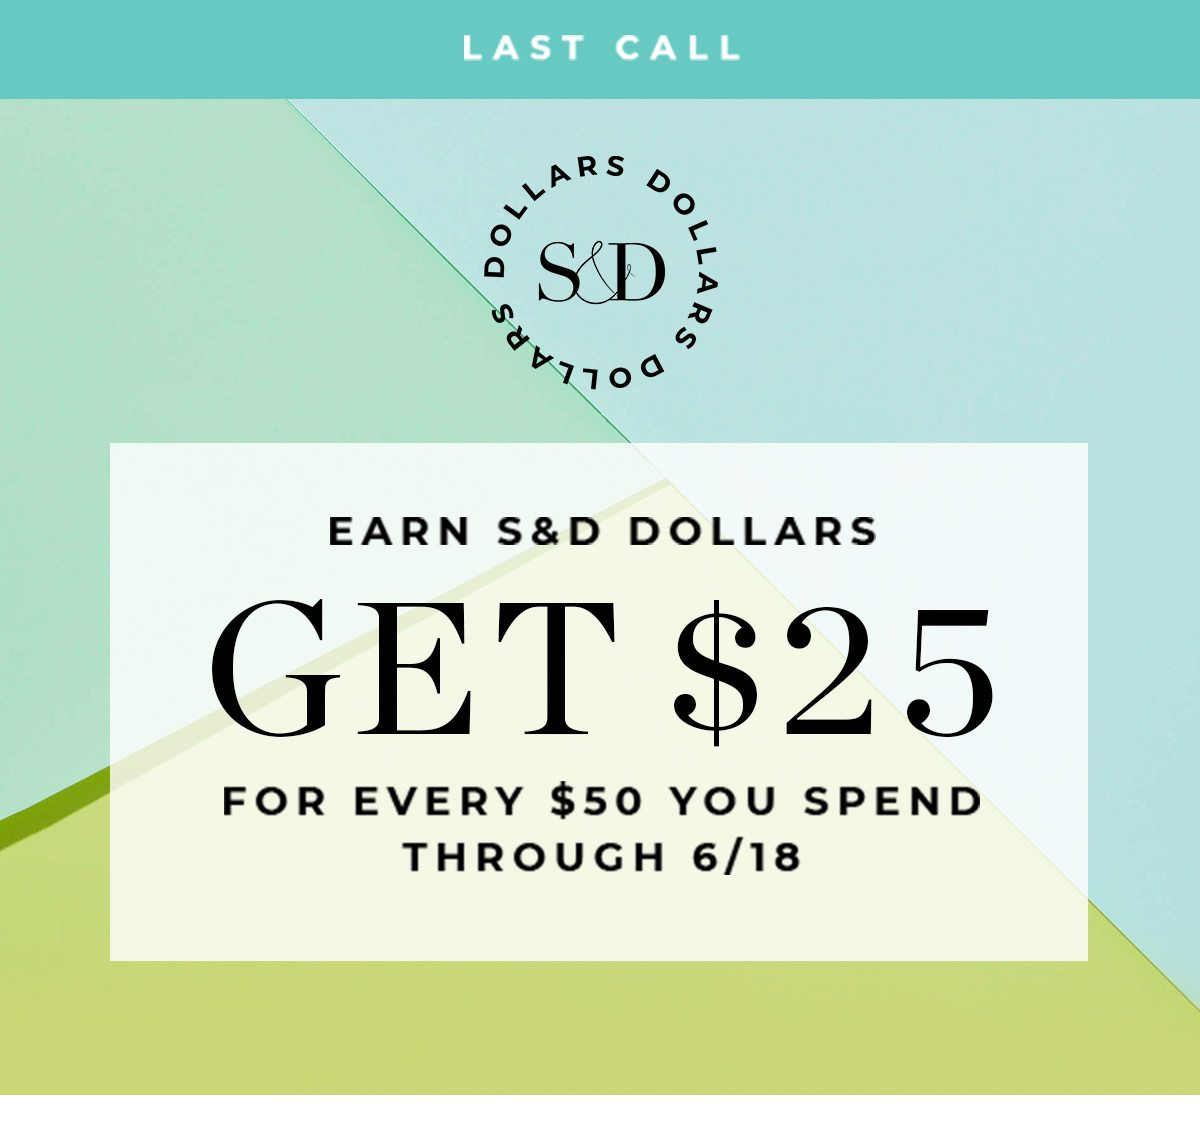 LAST CALL - Earn S&D Dollars